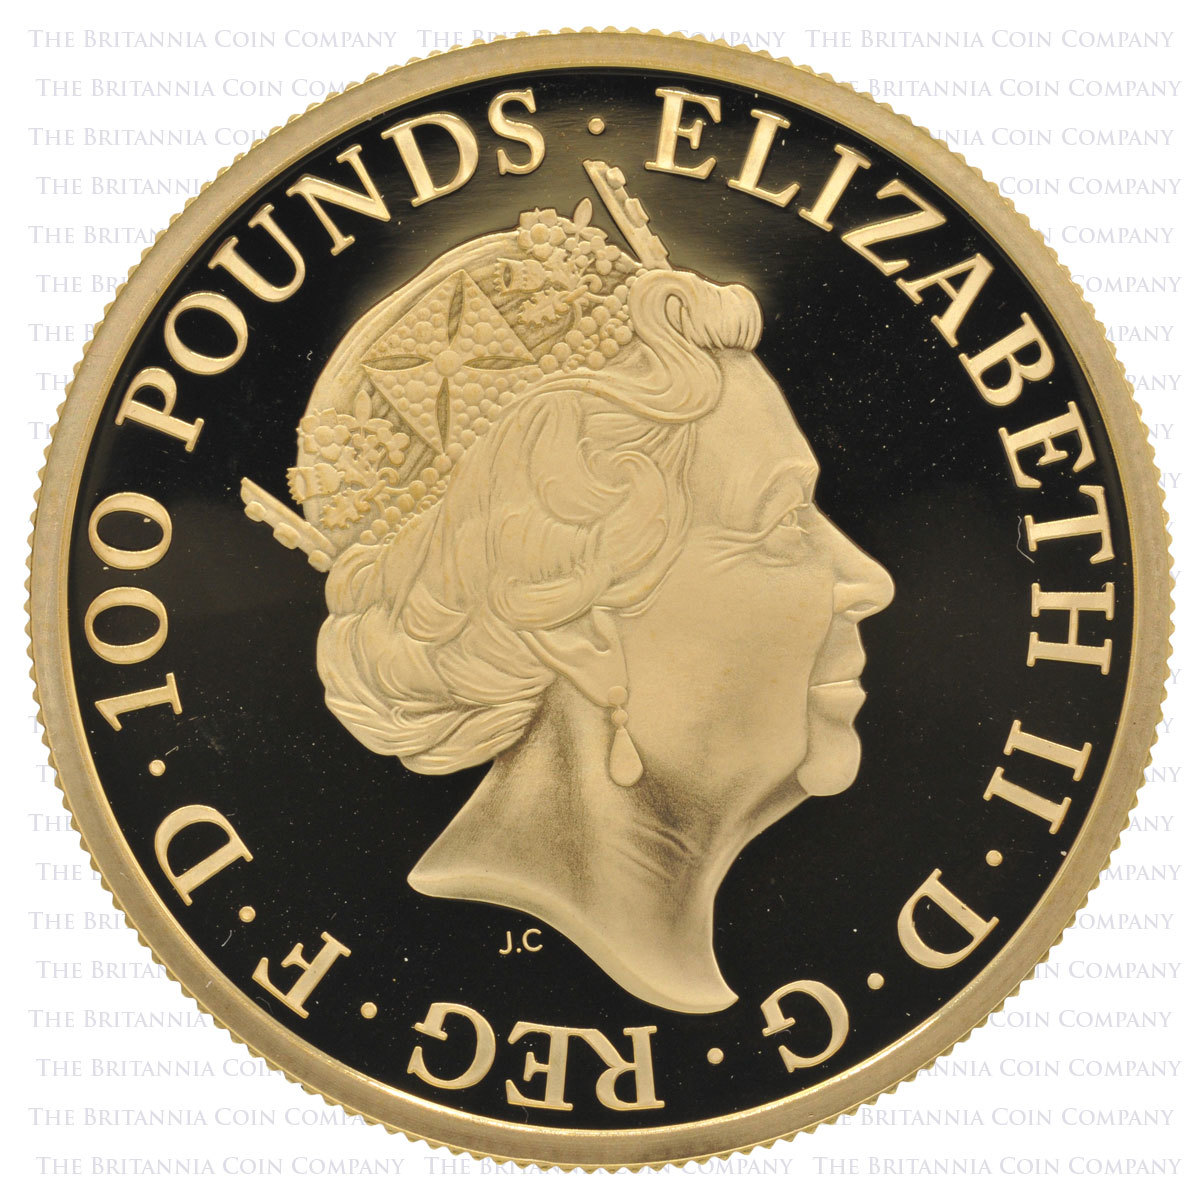 2019 Britannia UK Premium Six-Coin Gold Proof Set